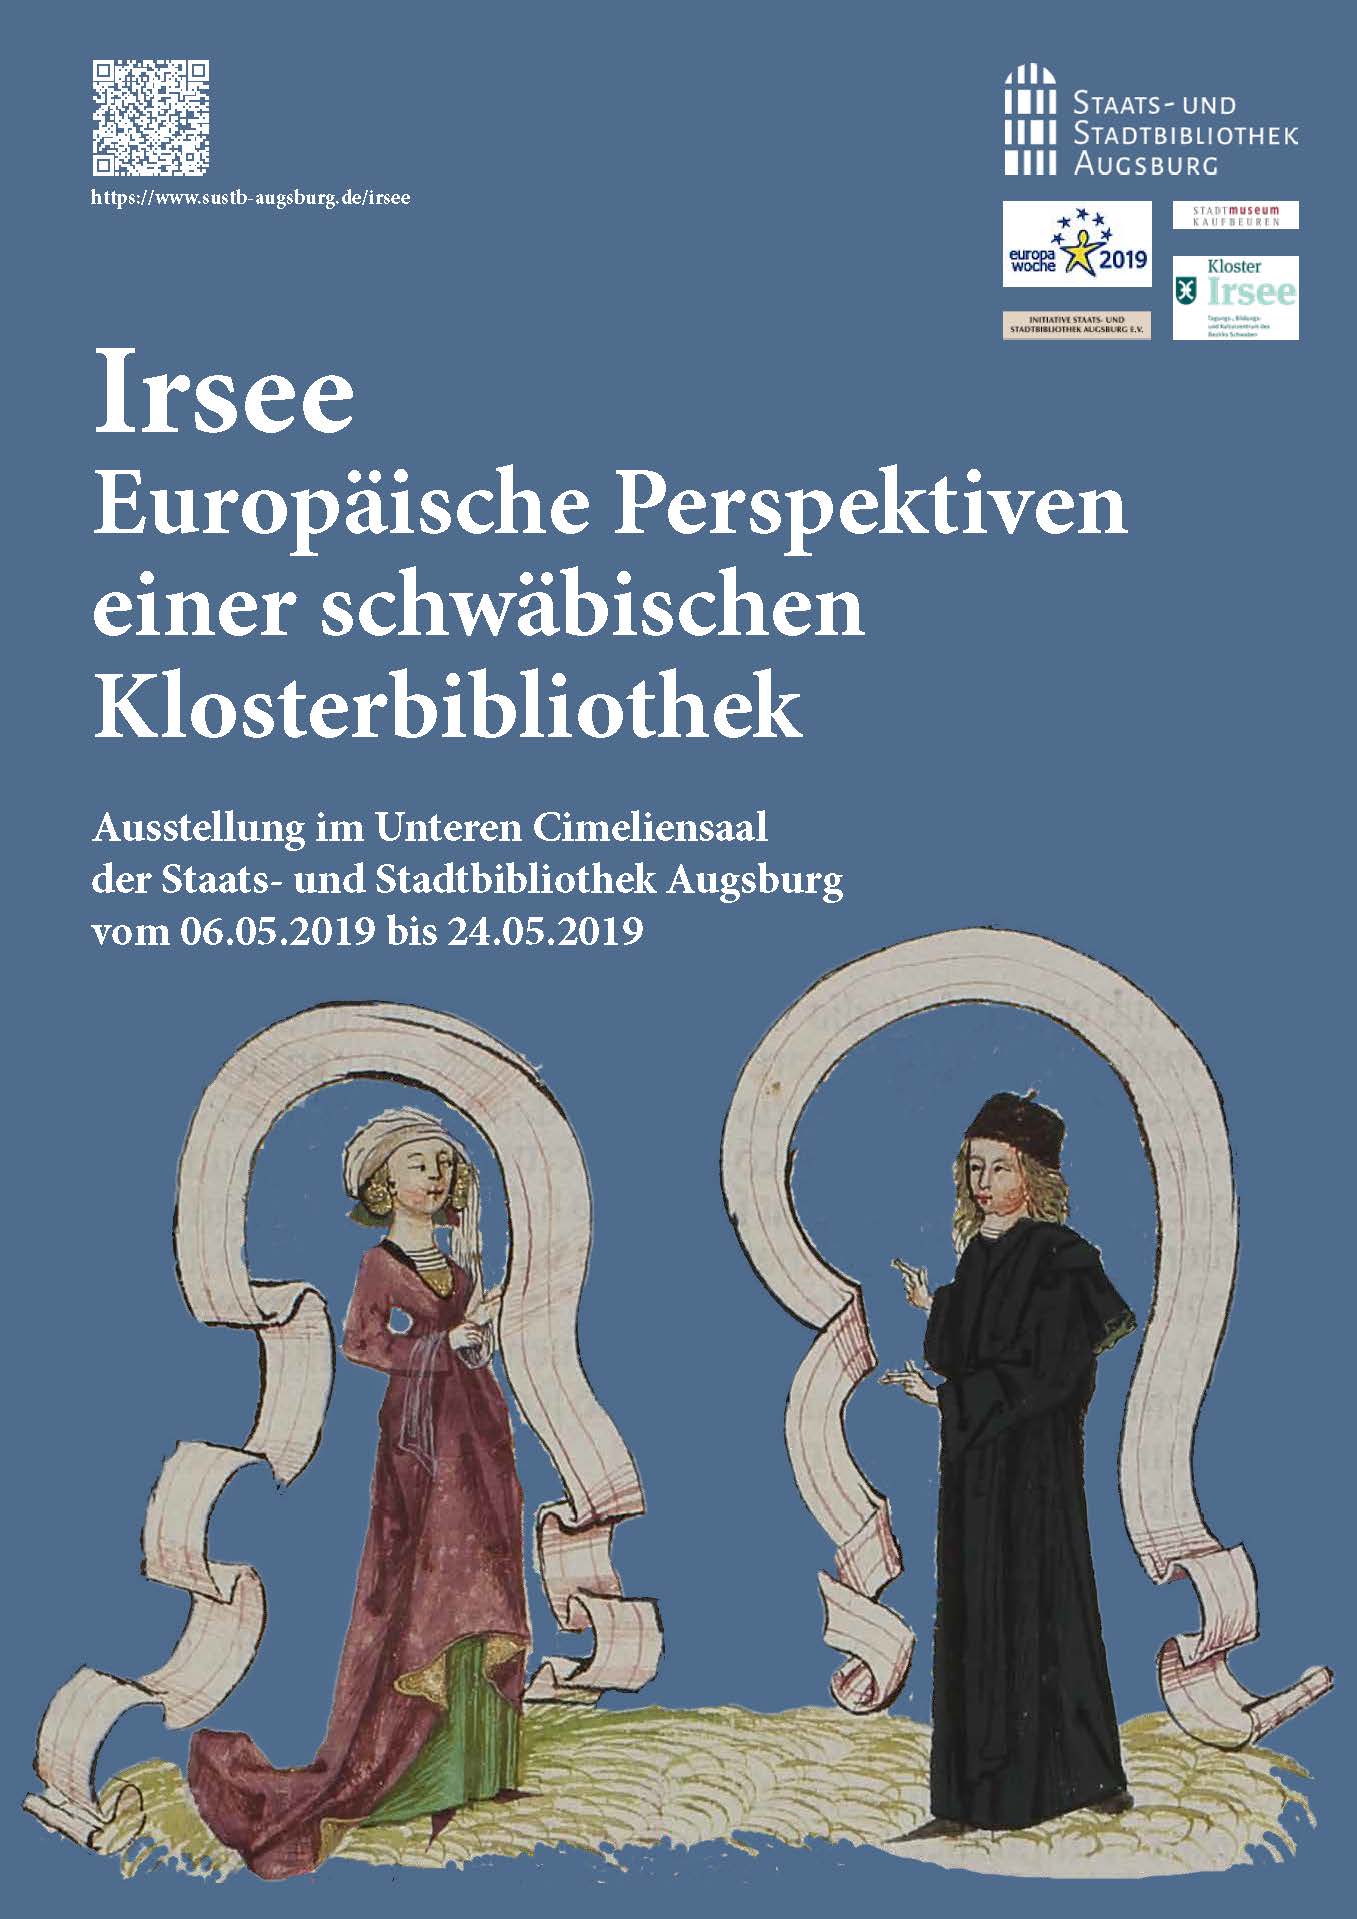 Plakat zur Ausstellung Irsee - Europäische Perspektiven einer schwäbischen Klosterbibliothek